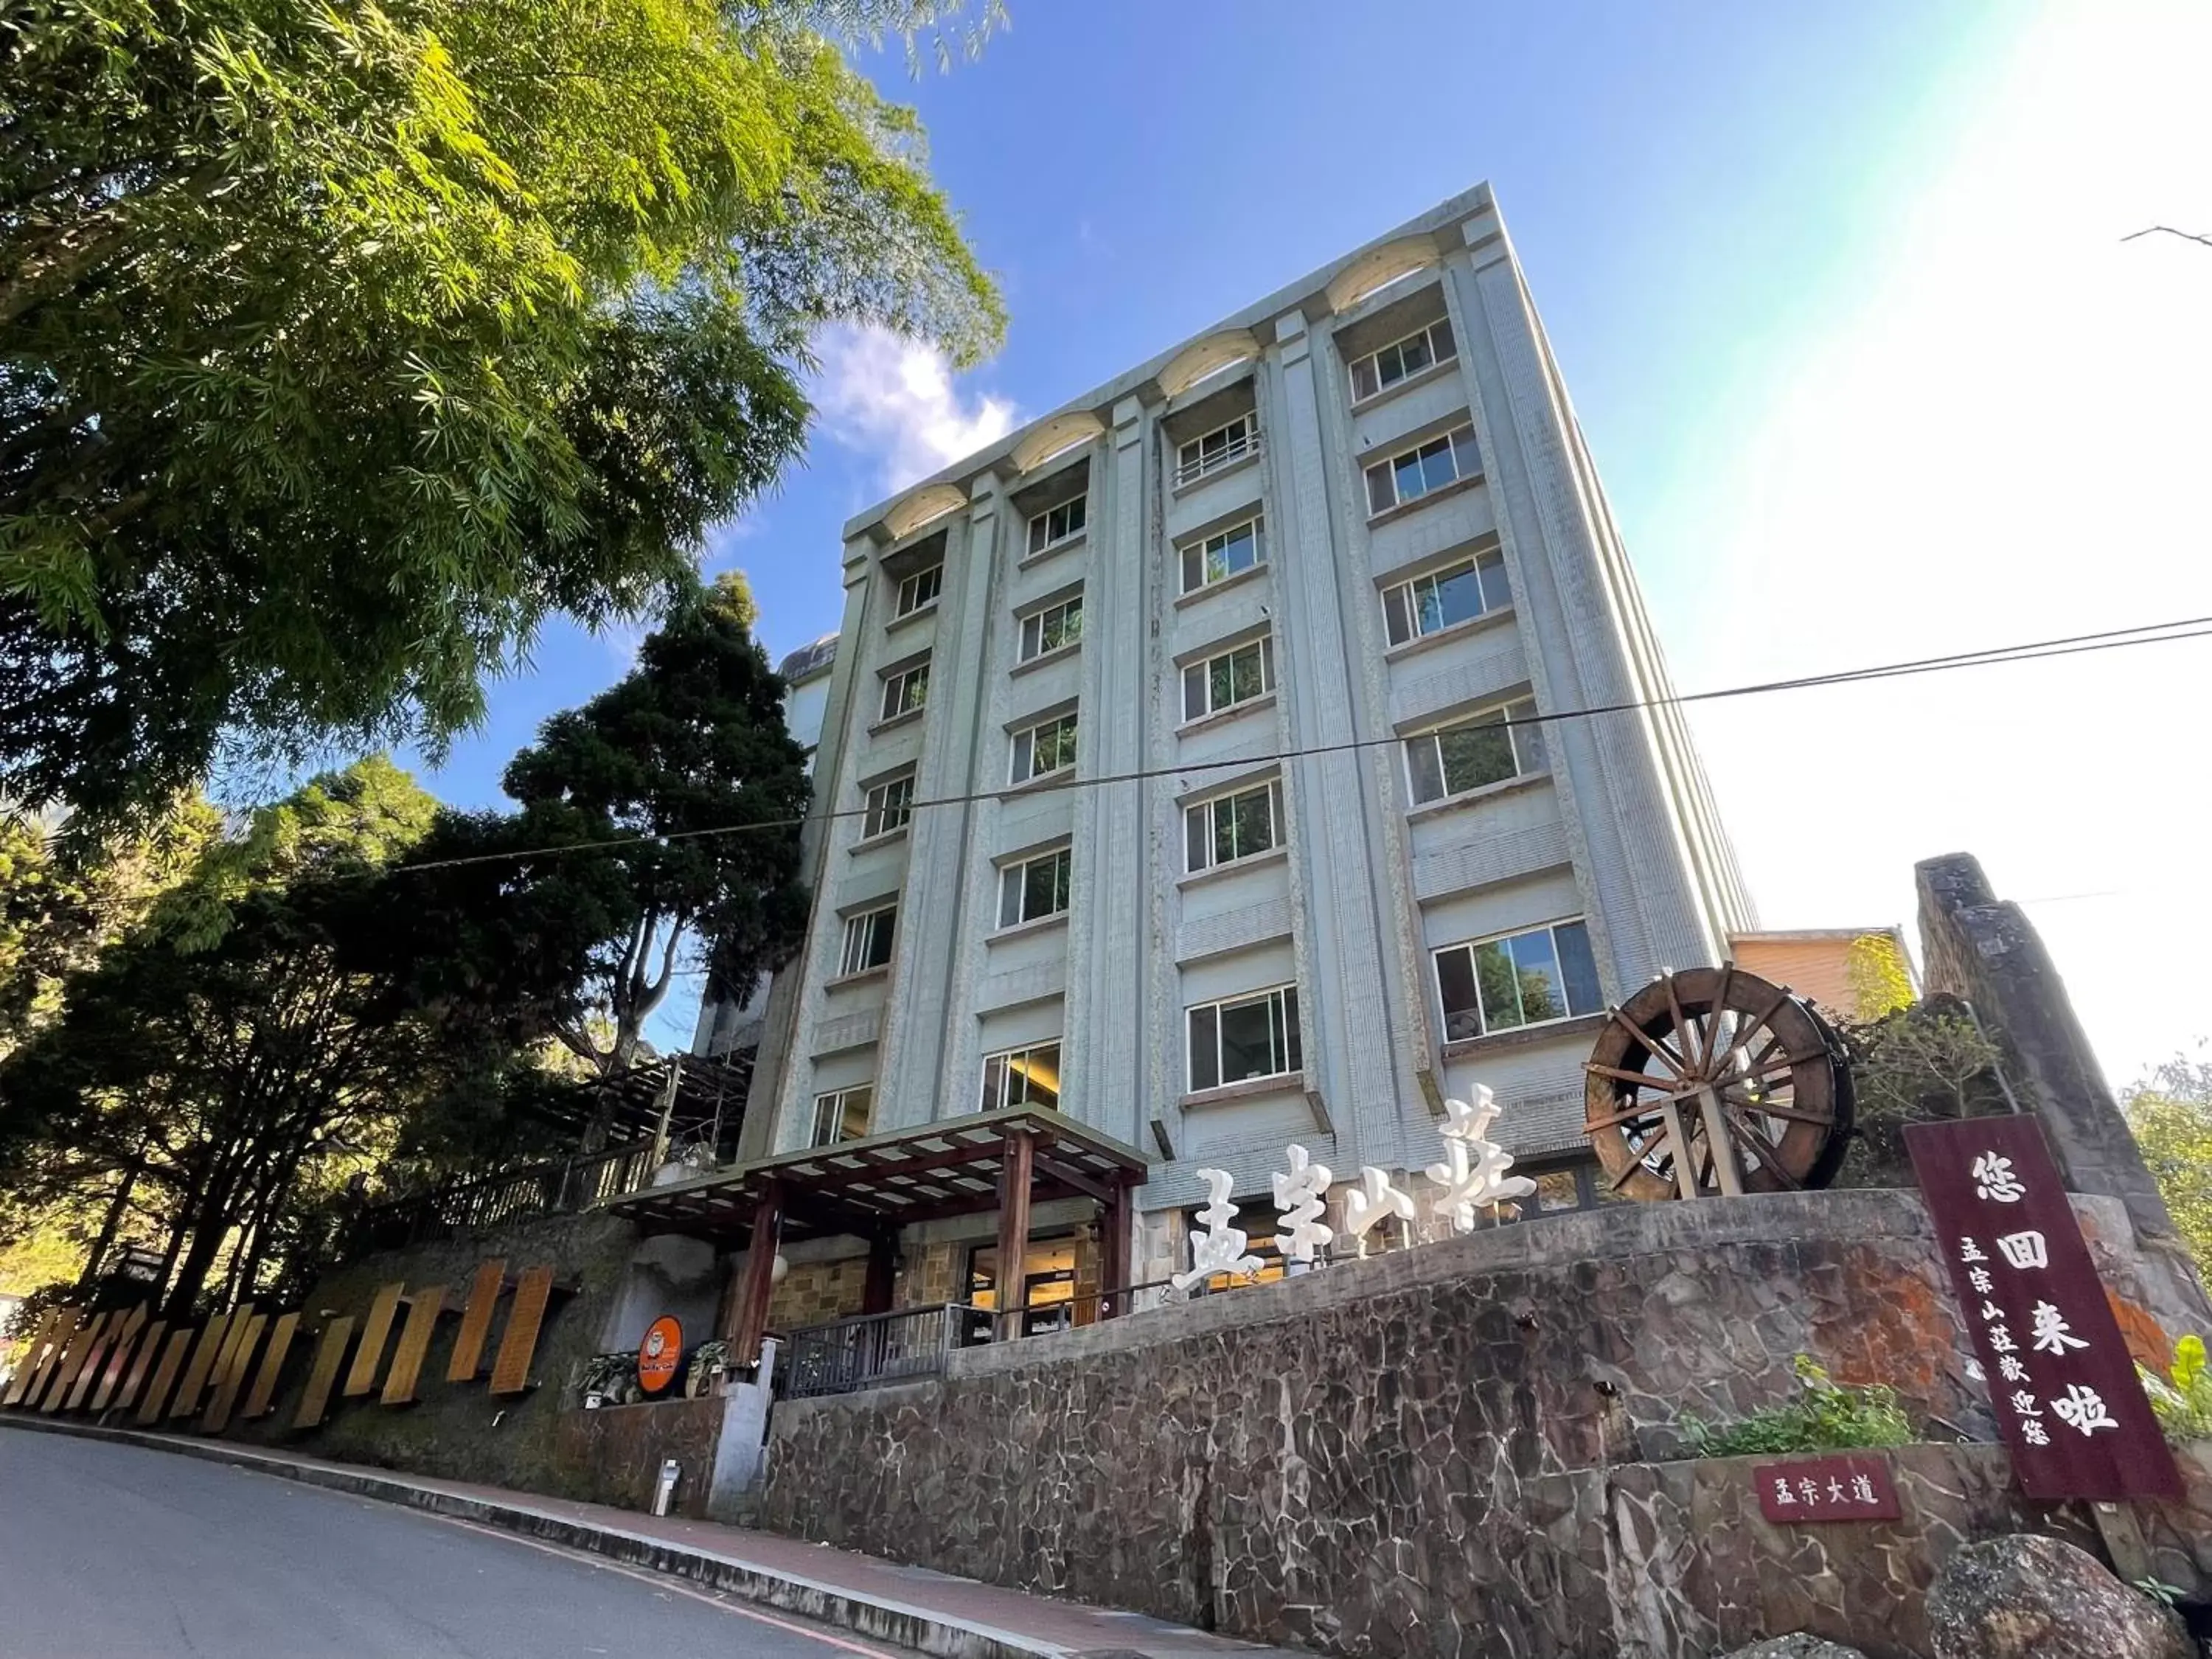 Facade/entrance, Property Building in Ginkgo Hotel